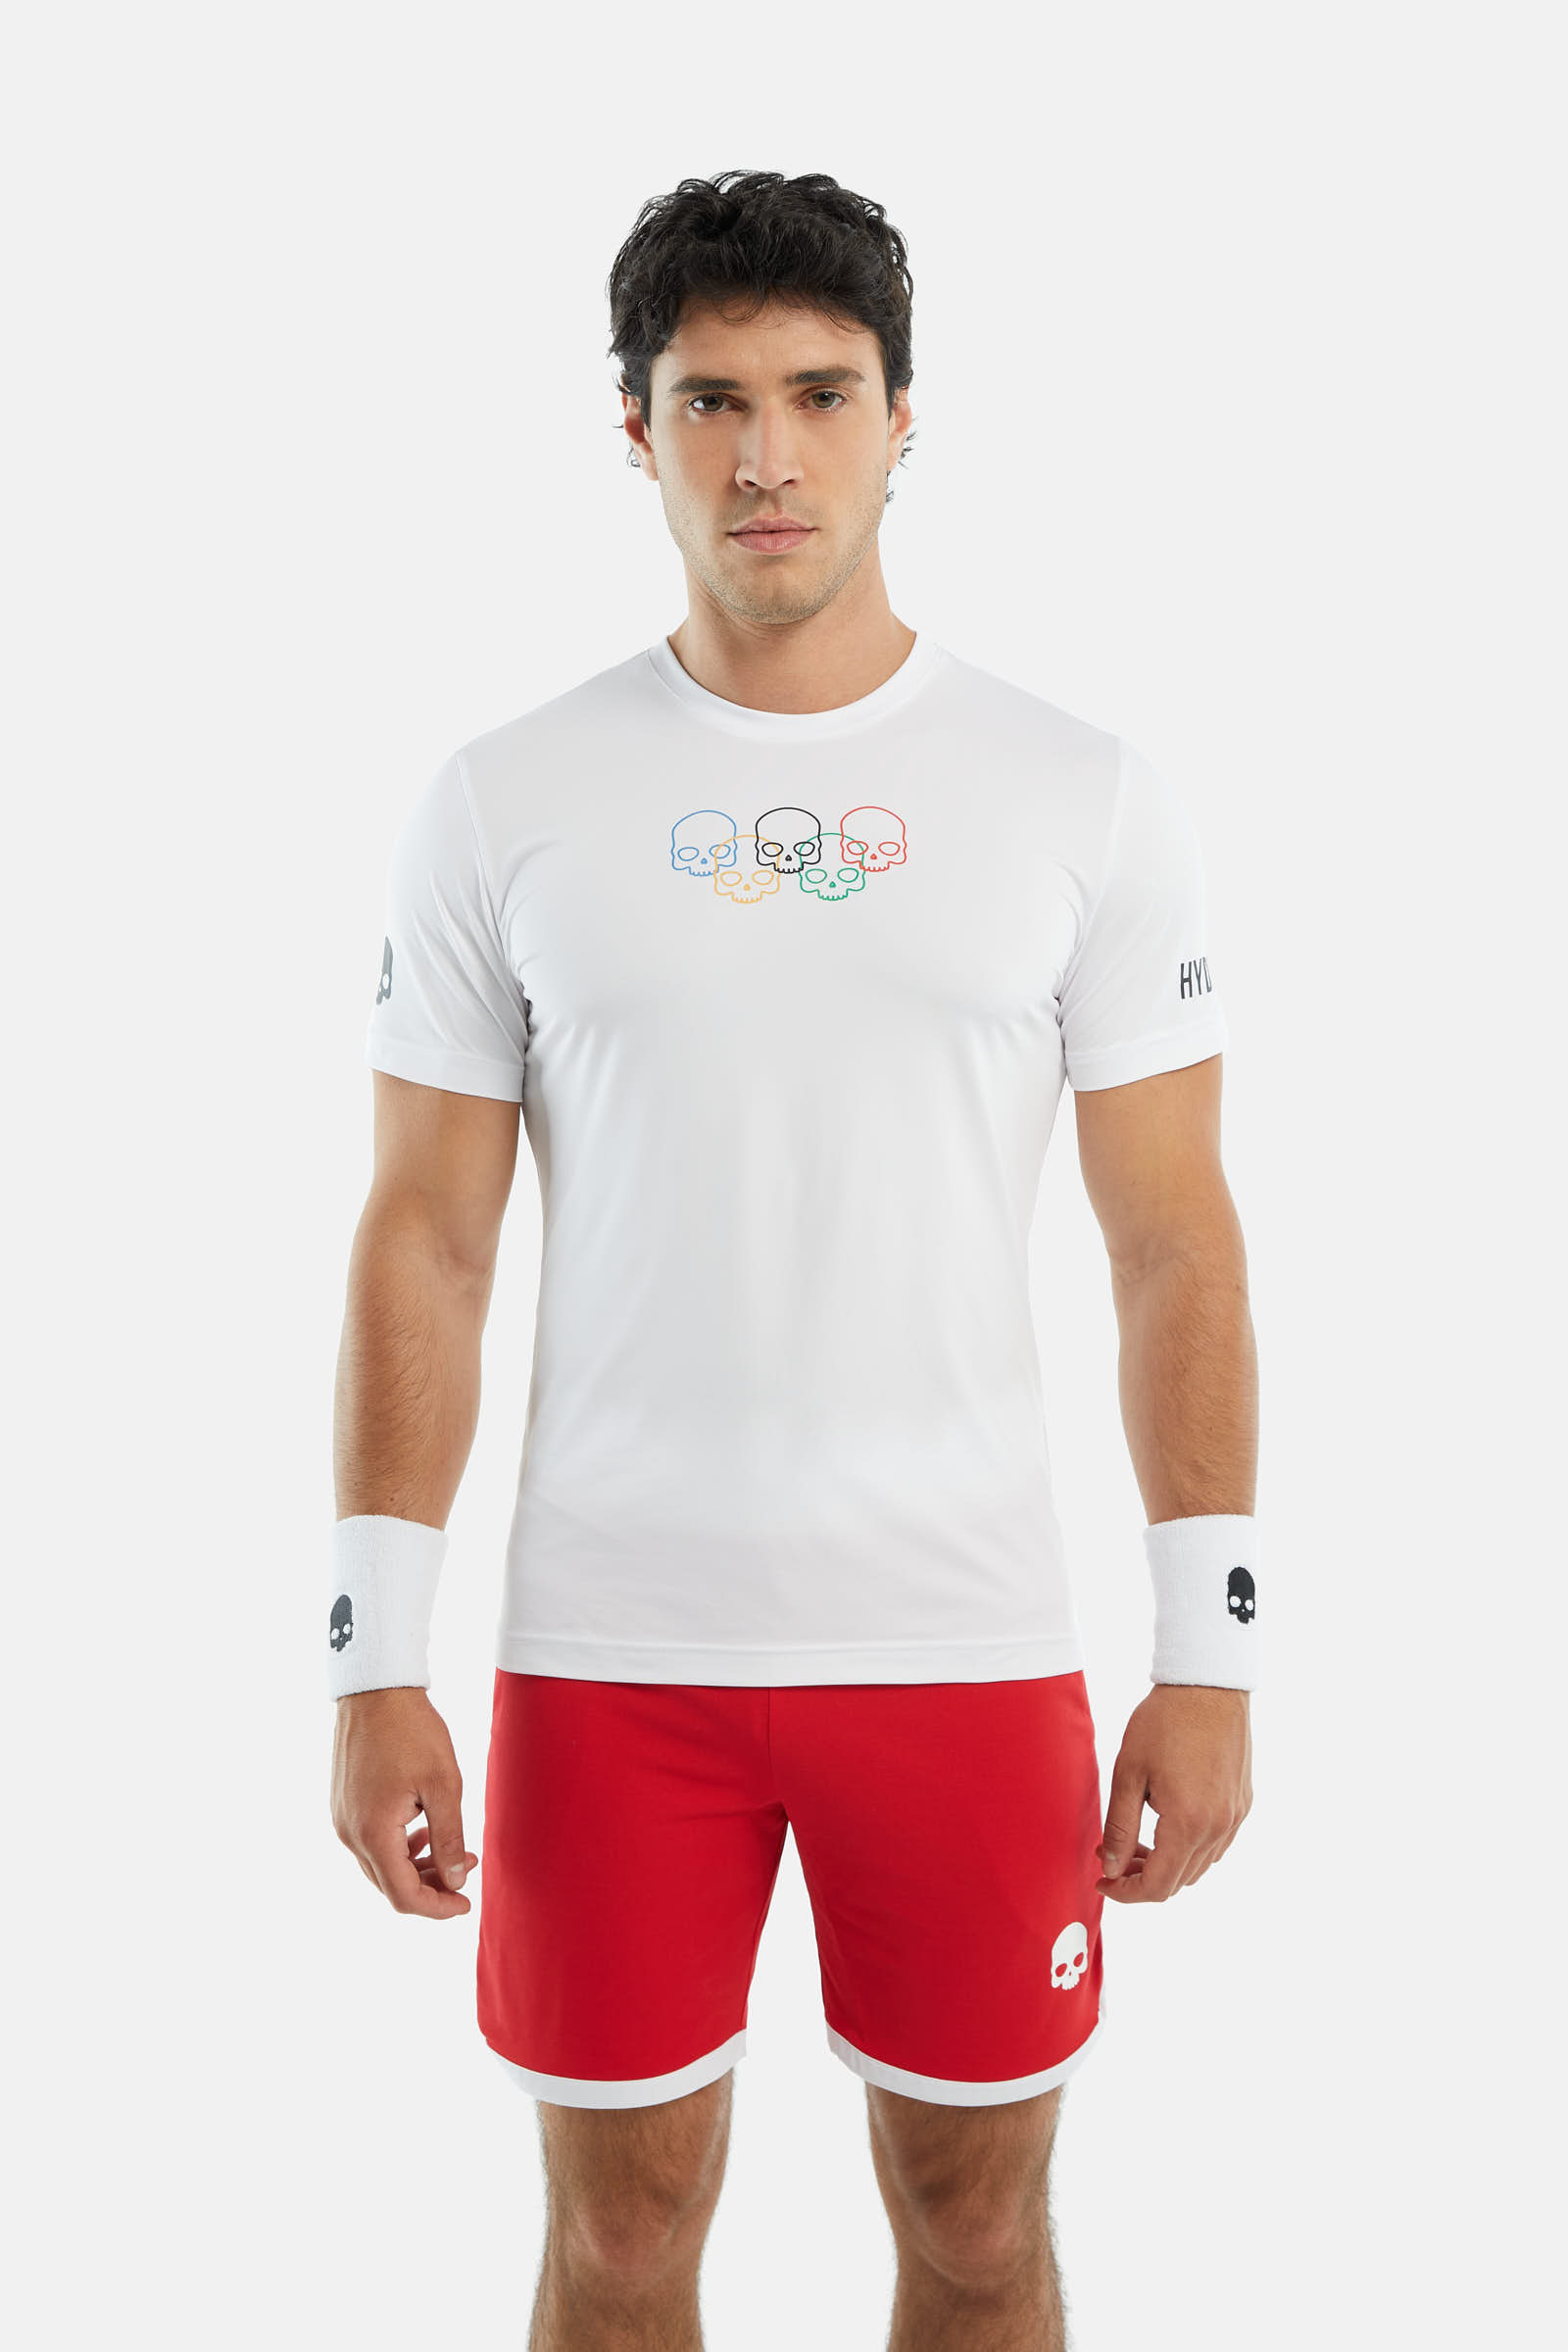 OLYMPIC SKULL TECH T-SHIRT - Apparel - Hydrogen - Luxury Sportwear